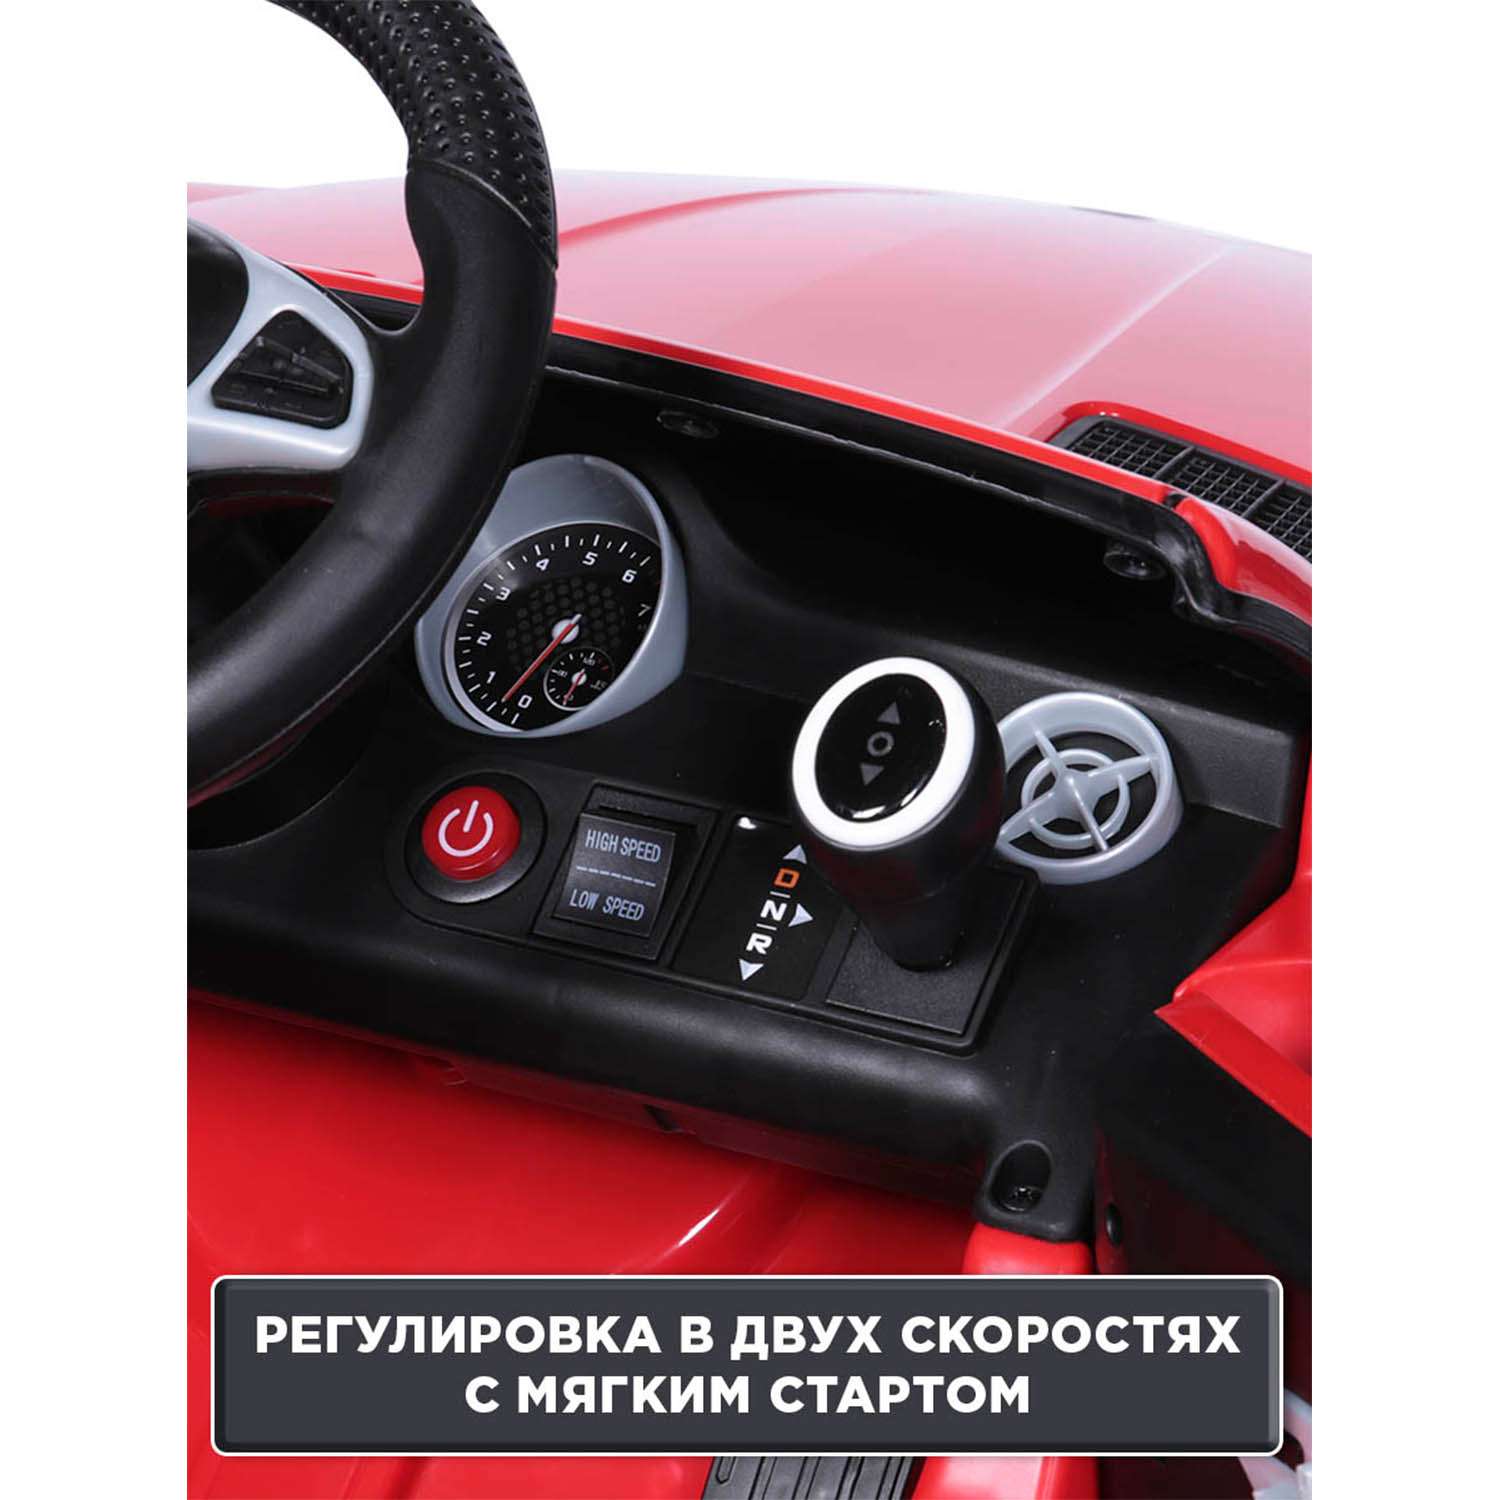 Электромобиль BabyCare Mercedes резиновые колеса красный - фото 10